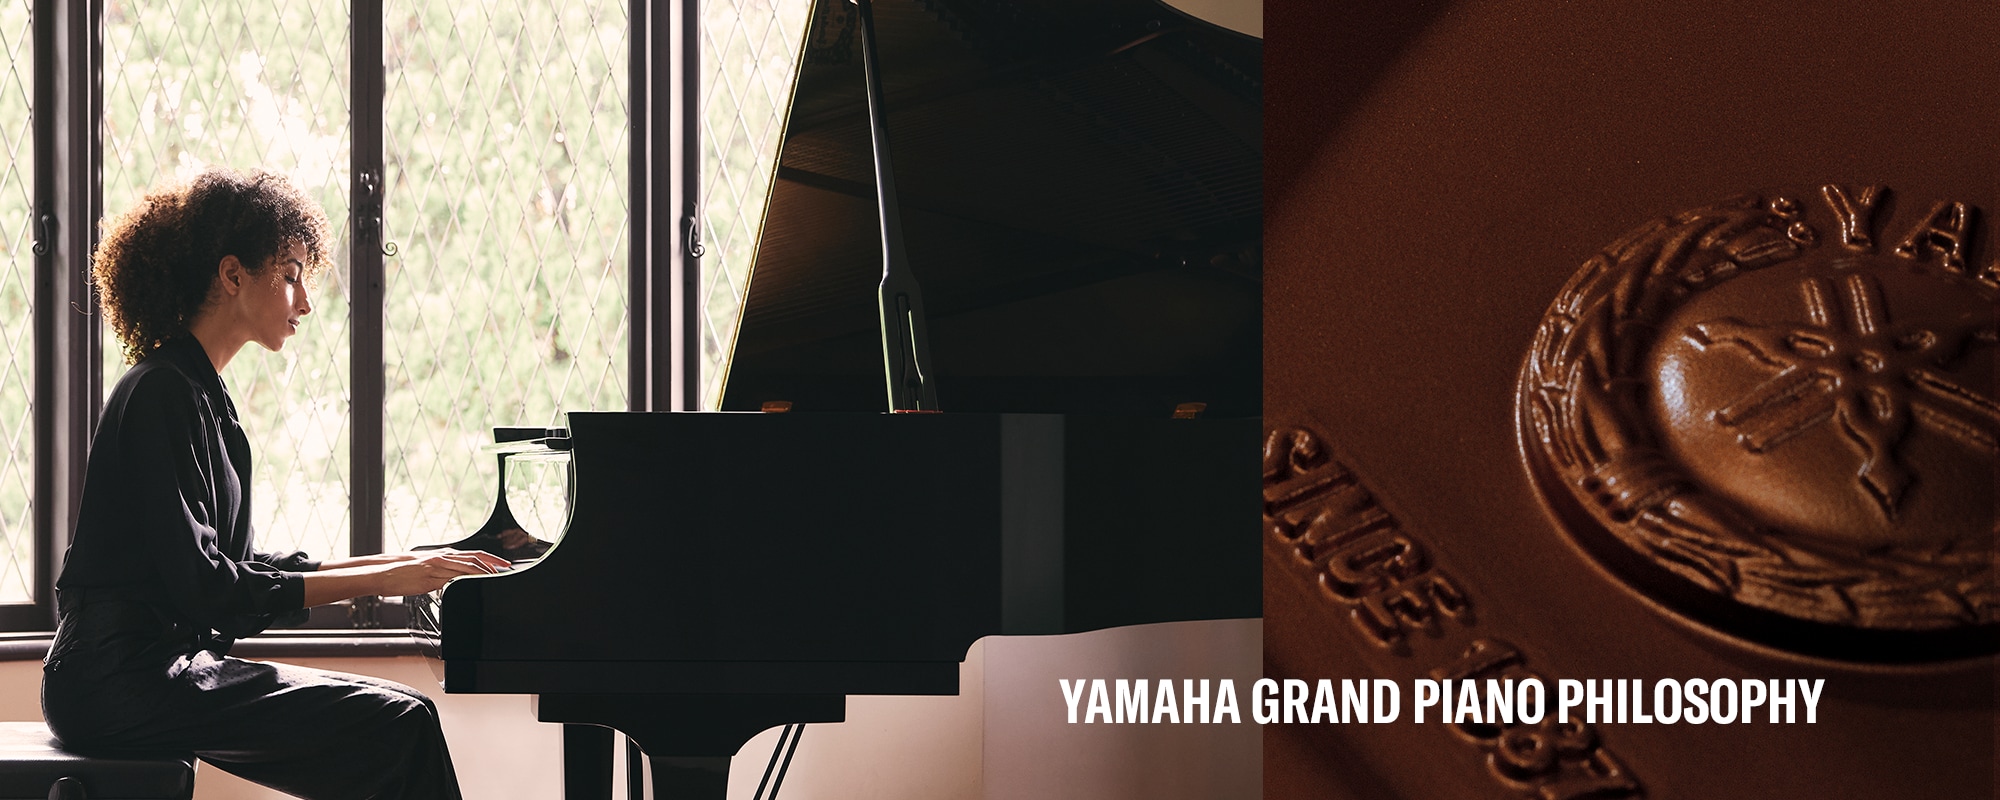 Vista principal de la filosofía del piano de cola Yamaha